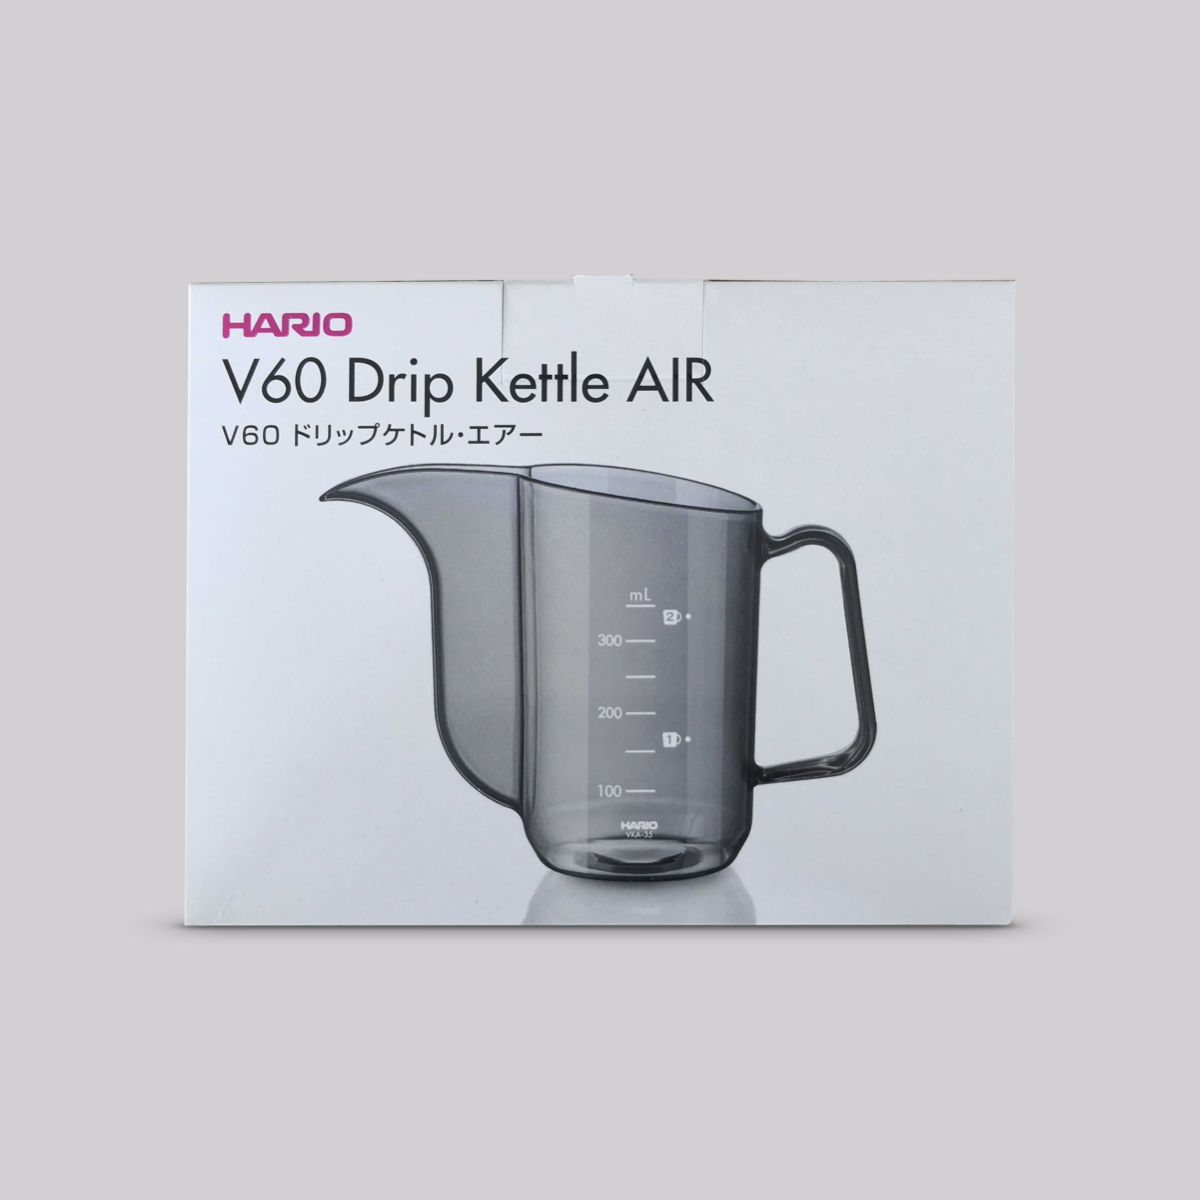 Hario V60 Drip Kettle Air